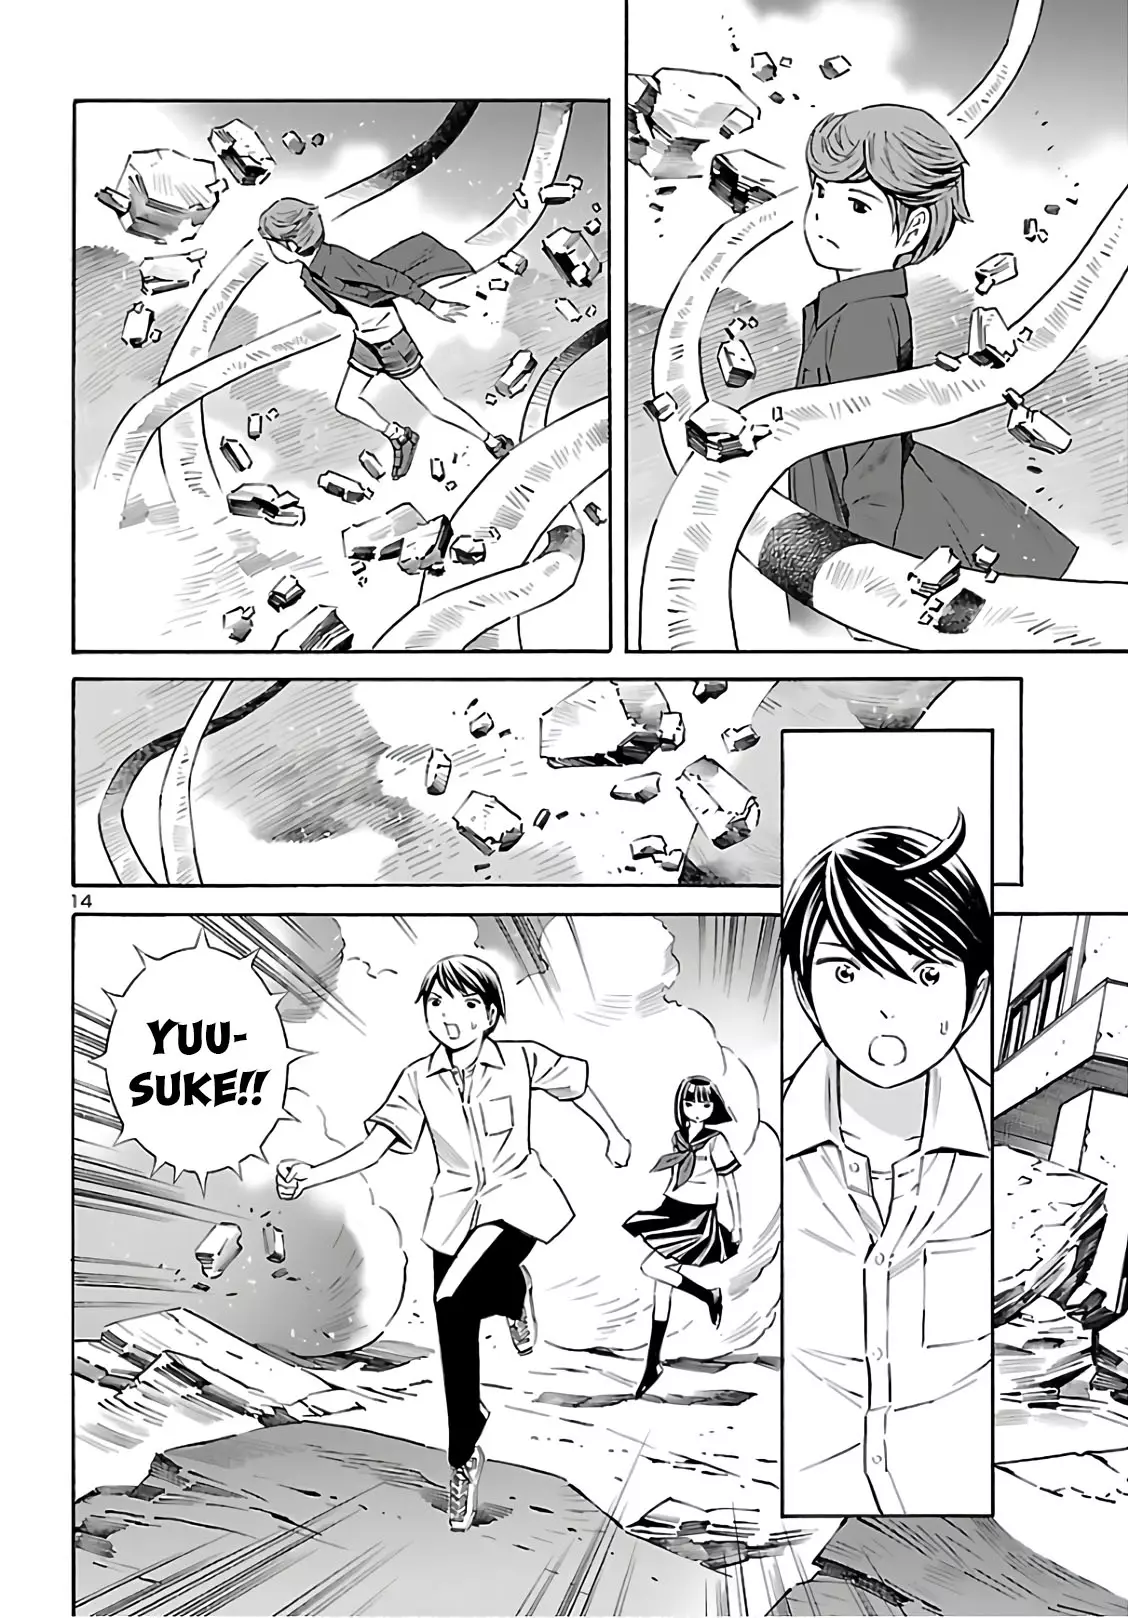 24-Ku No Hanako-San - 9 page 14